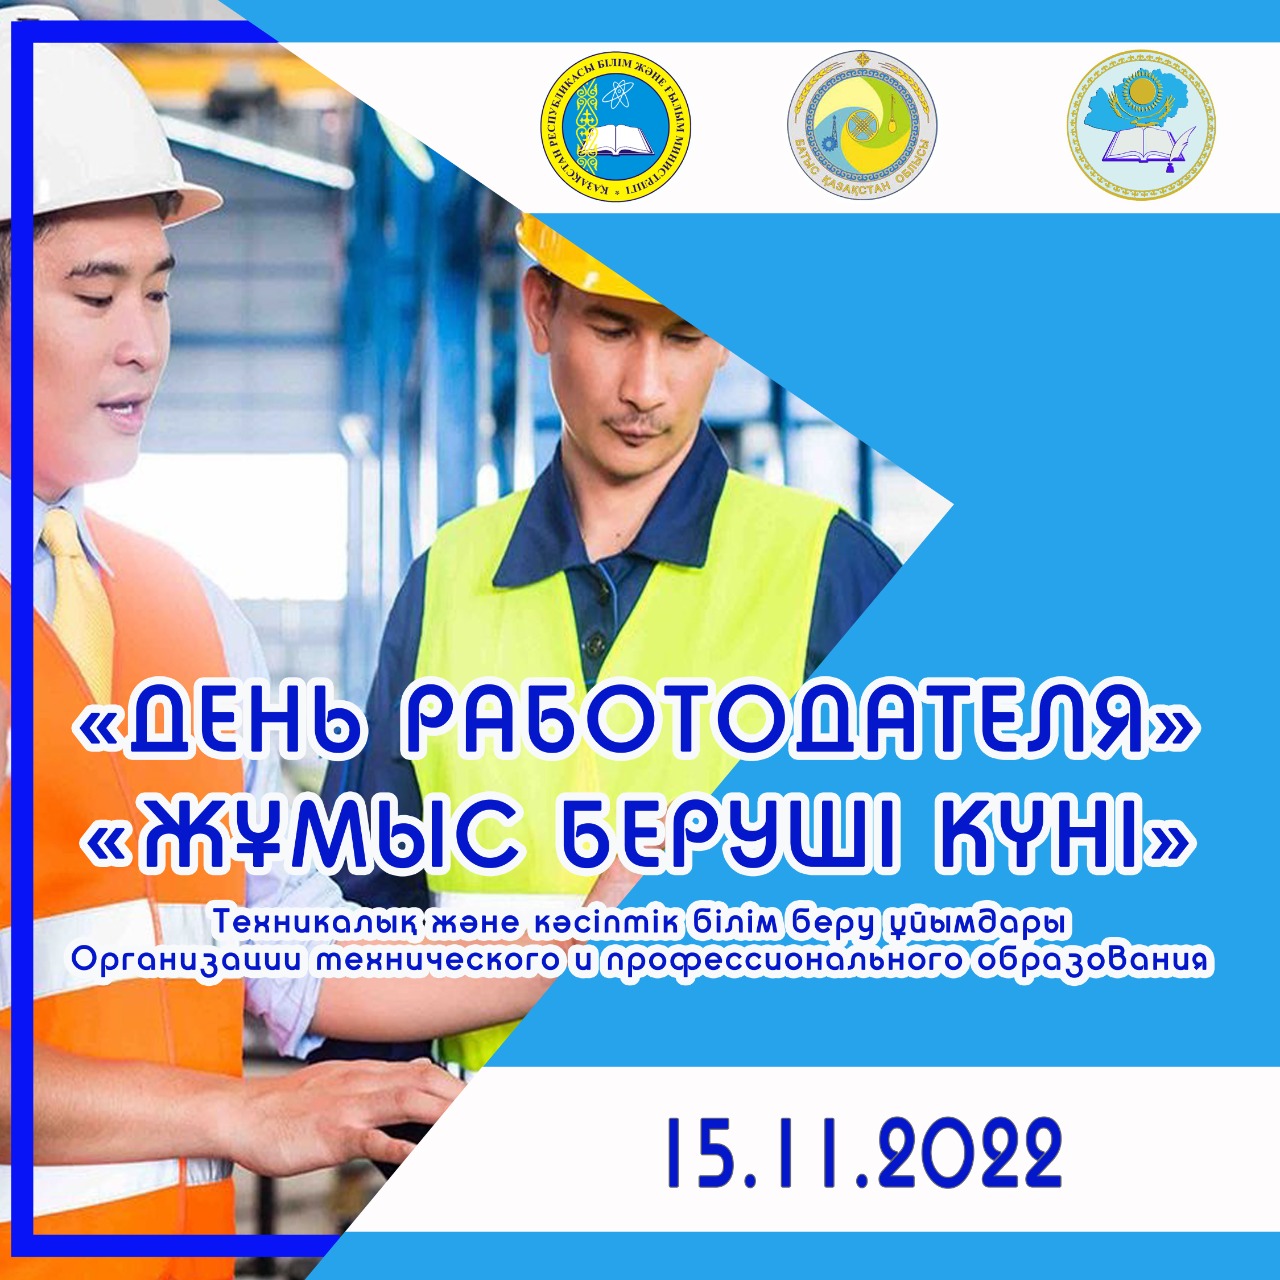 «День работодателя» в технических и профессиональных организациях образования